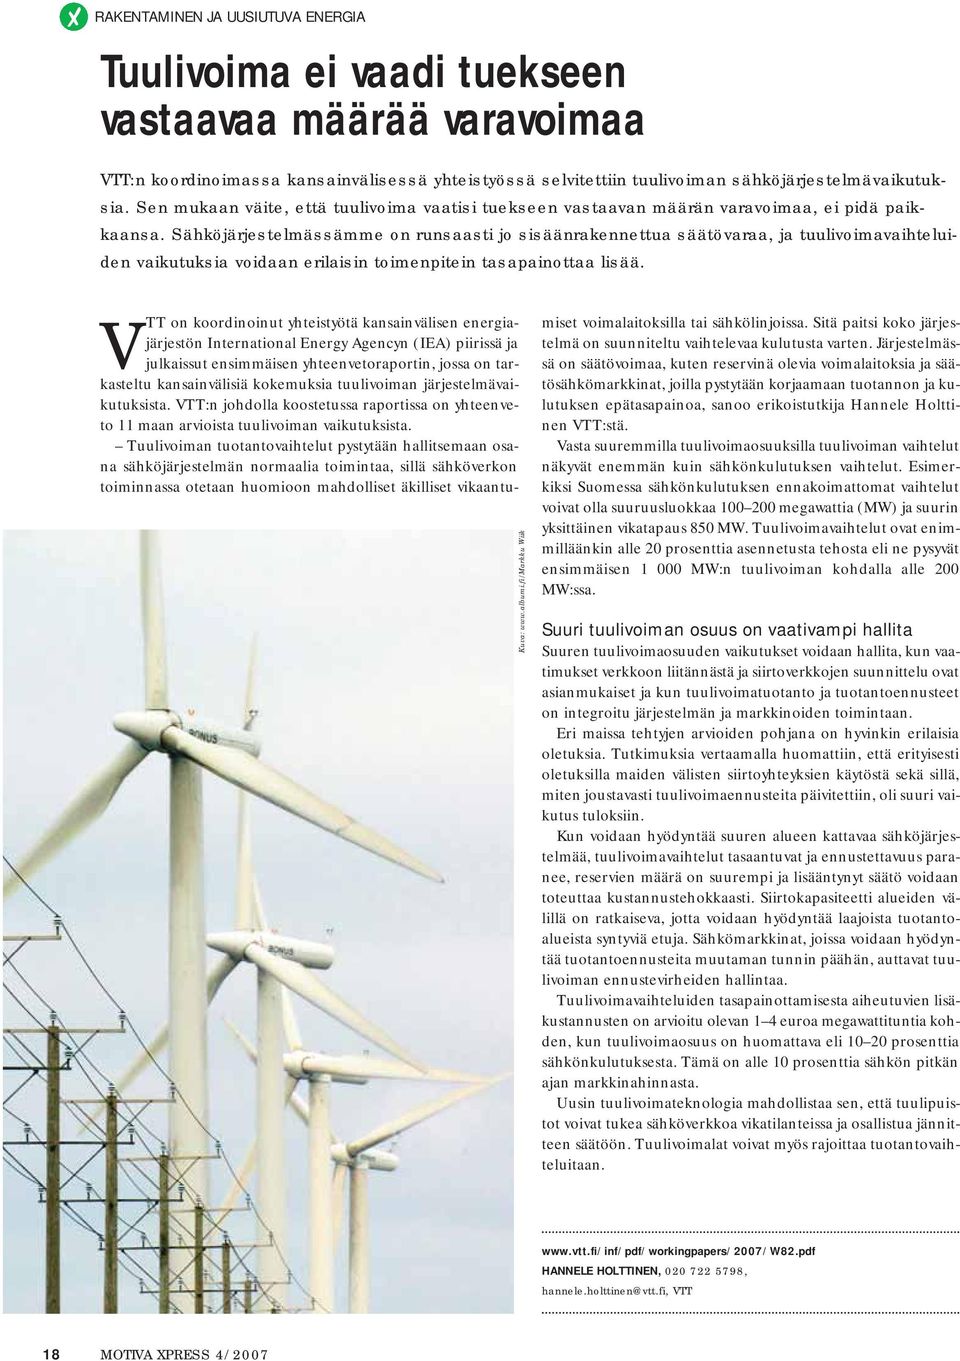 Sähköjärjestelmässämme on runsaasti jo sisäänrakennettua säätövaraa, ja tuulivoimavaihteluiden vaikutuksia voidaan erilaisin toimenpitein tasapainottaa lisää. Kuva: www.albumi.